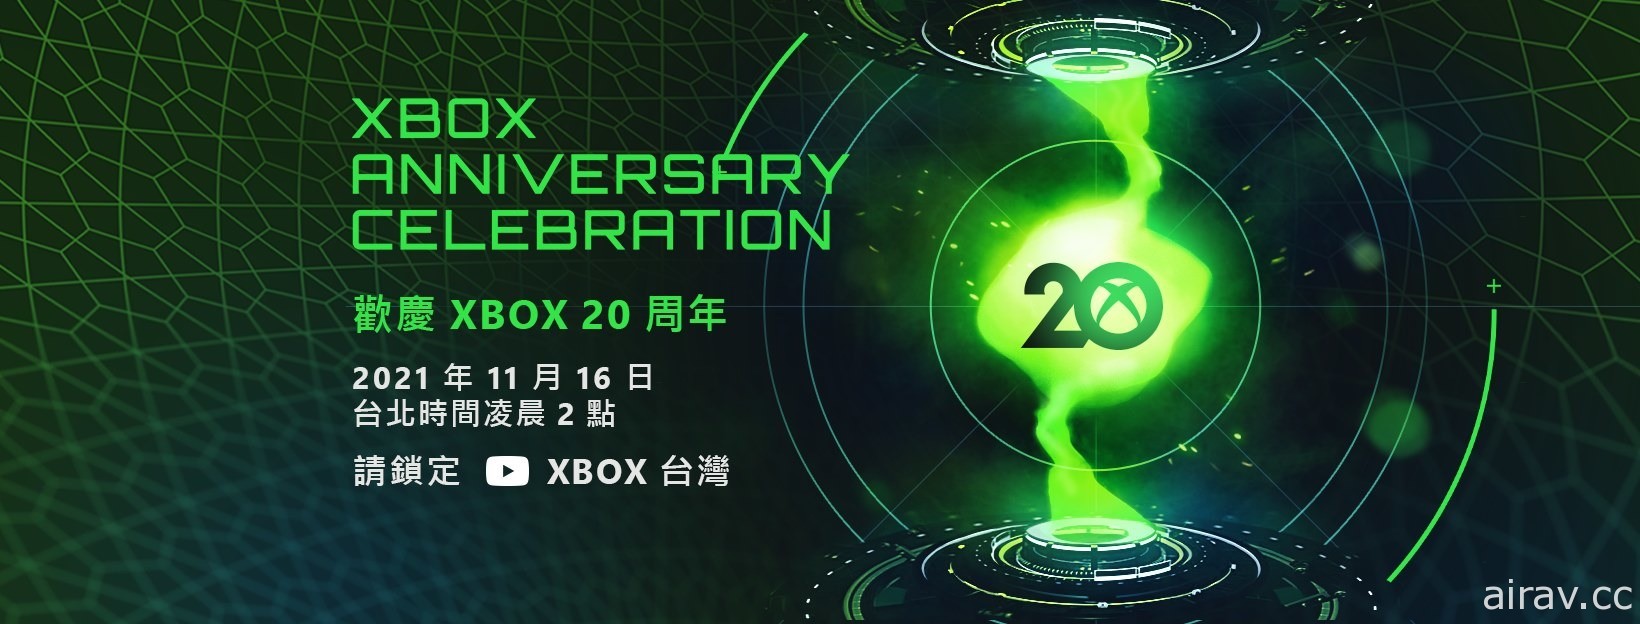 Xbox 欢庆 20 周年纪念特别直播节目 16 日凌晨登场 回顾精彩历程曝光最新资讯